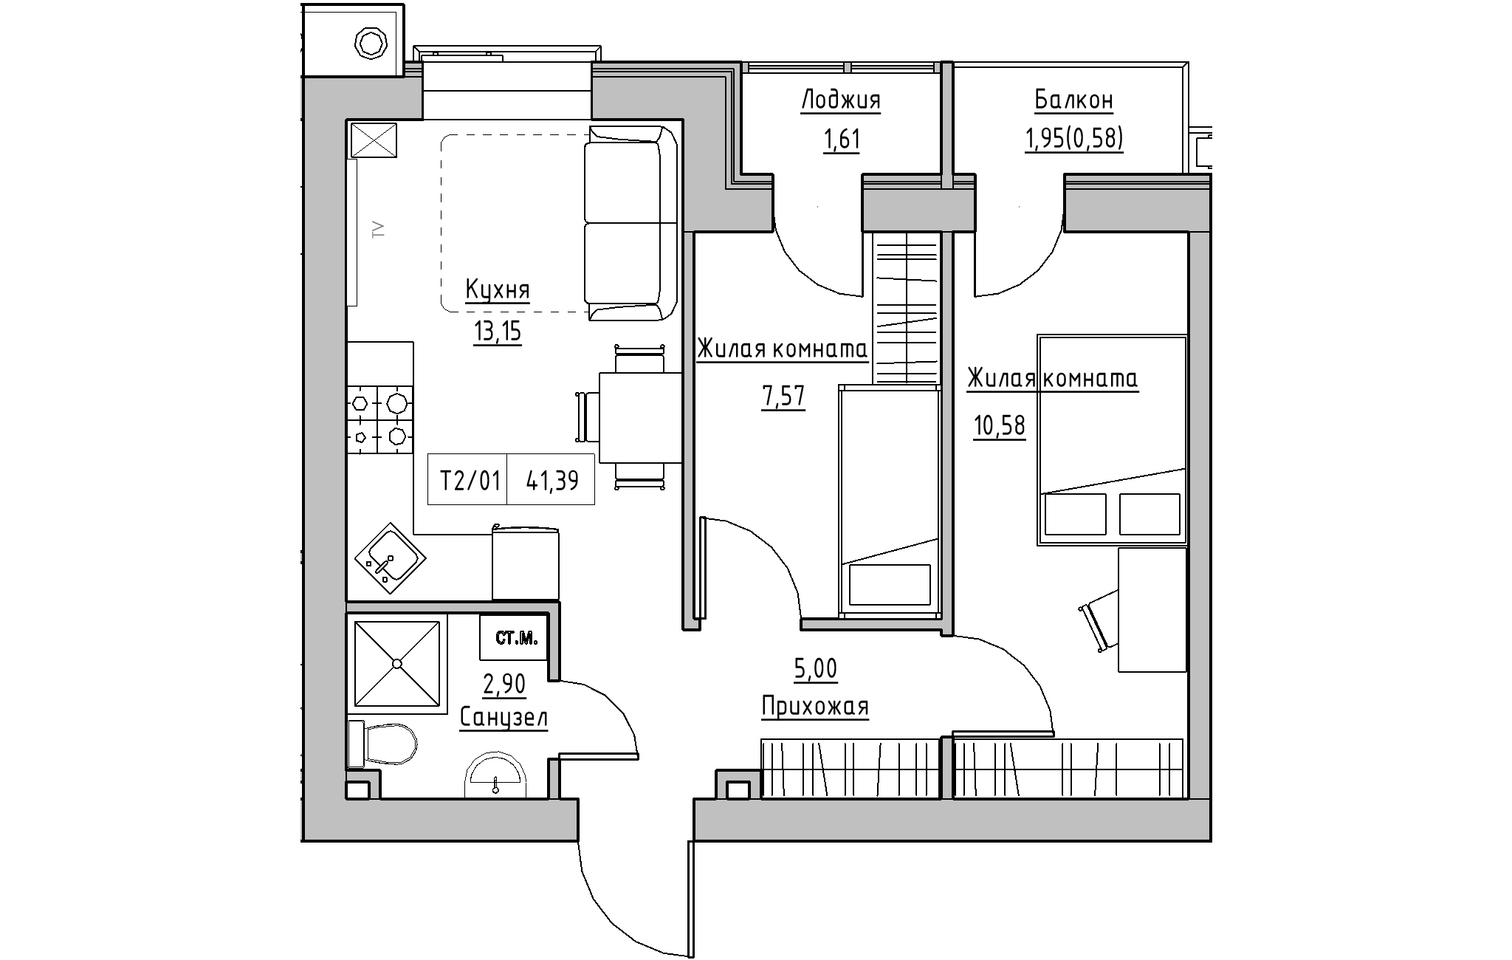 Планування 2-к квартира площею 41.39м2, KS-013-02/0009.